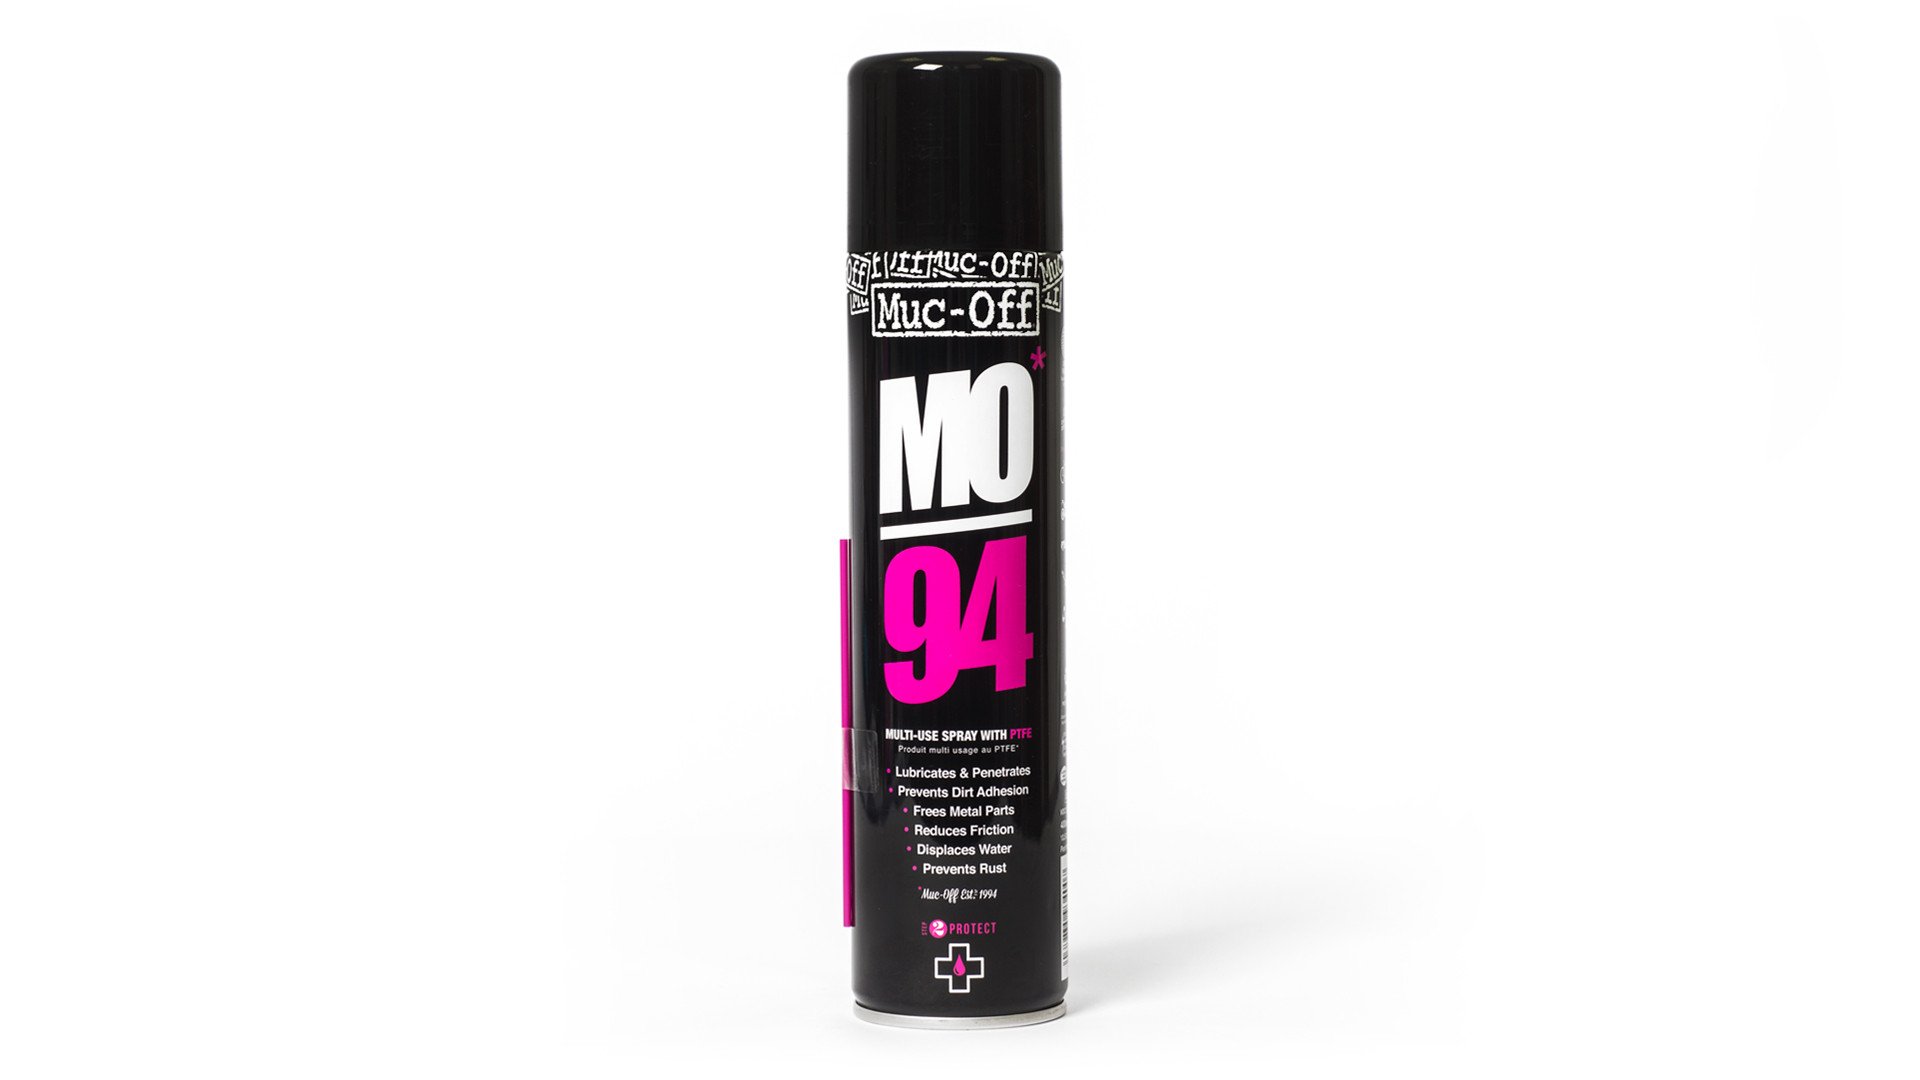 Billede af Muc-Off MO94 multi-use spray 400ML hos Cyclesport Silkeborg